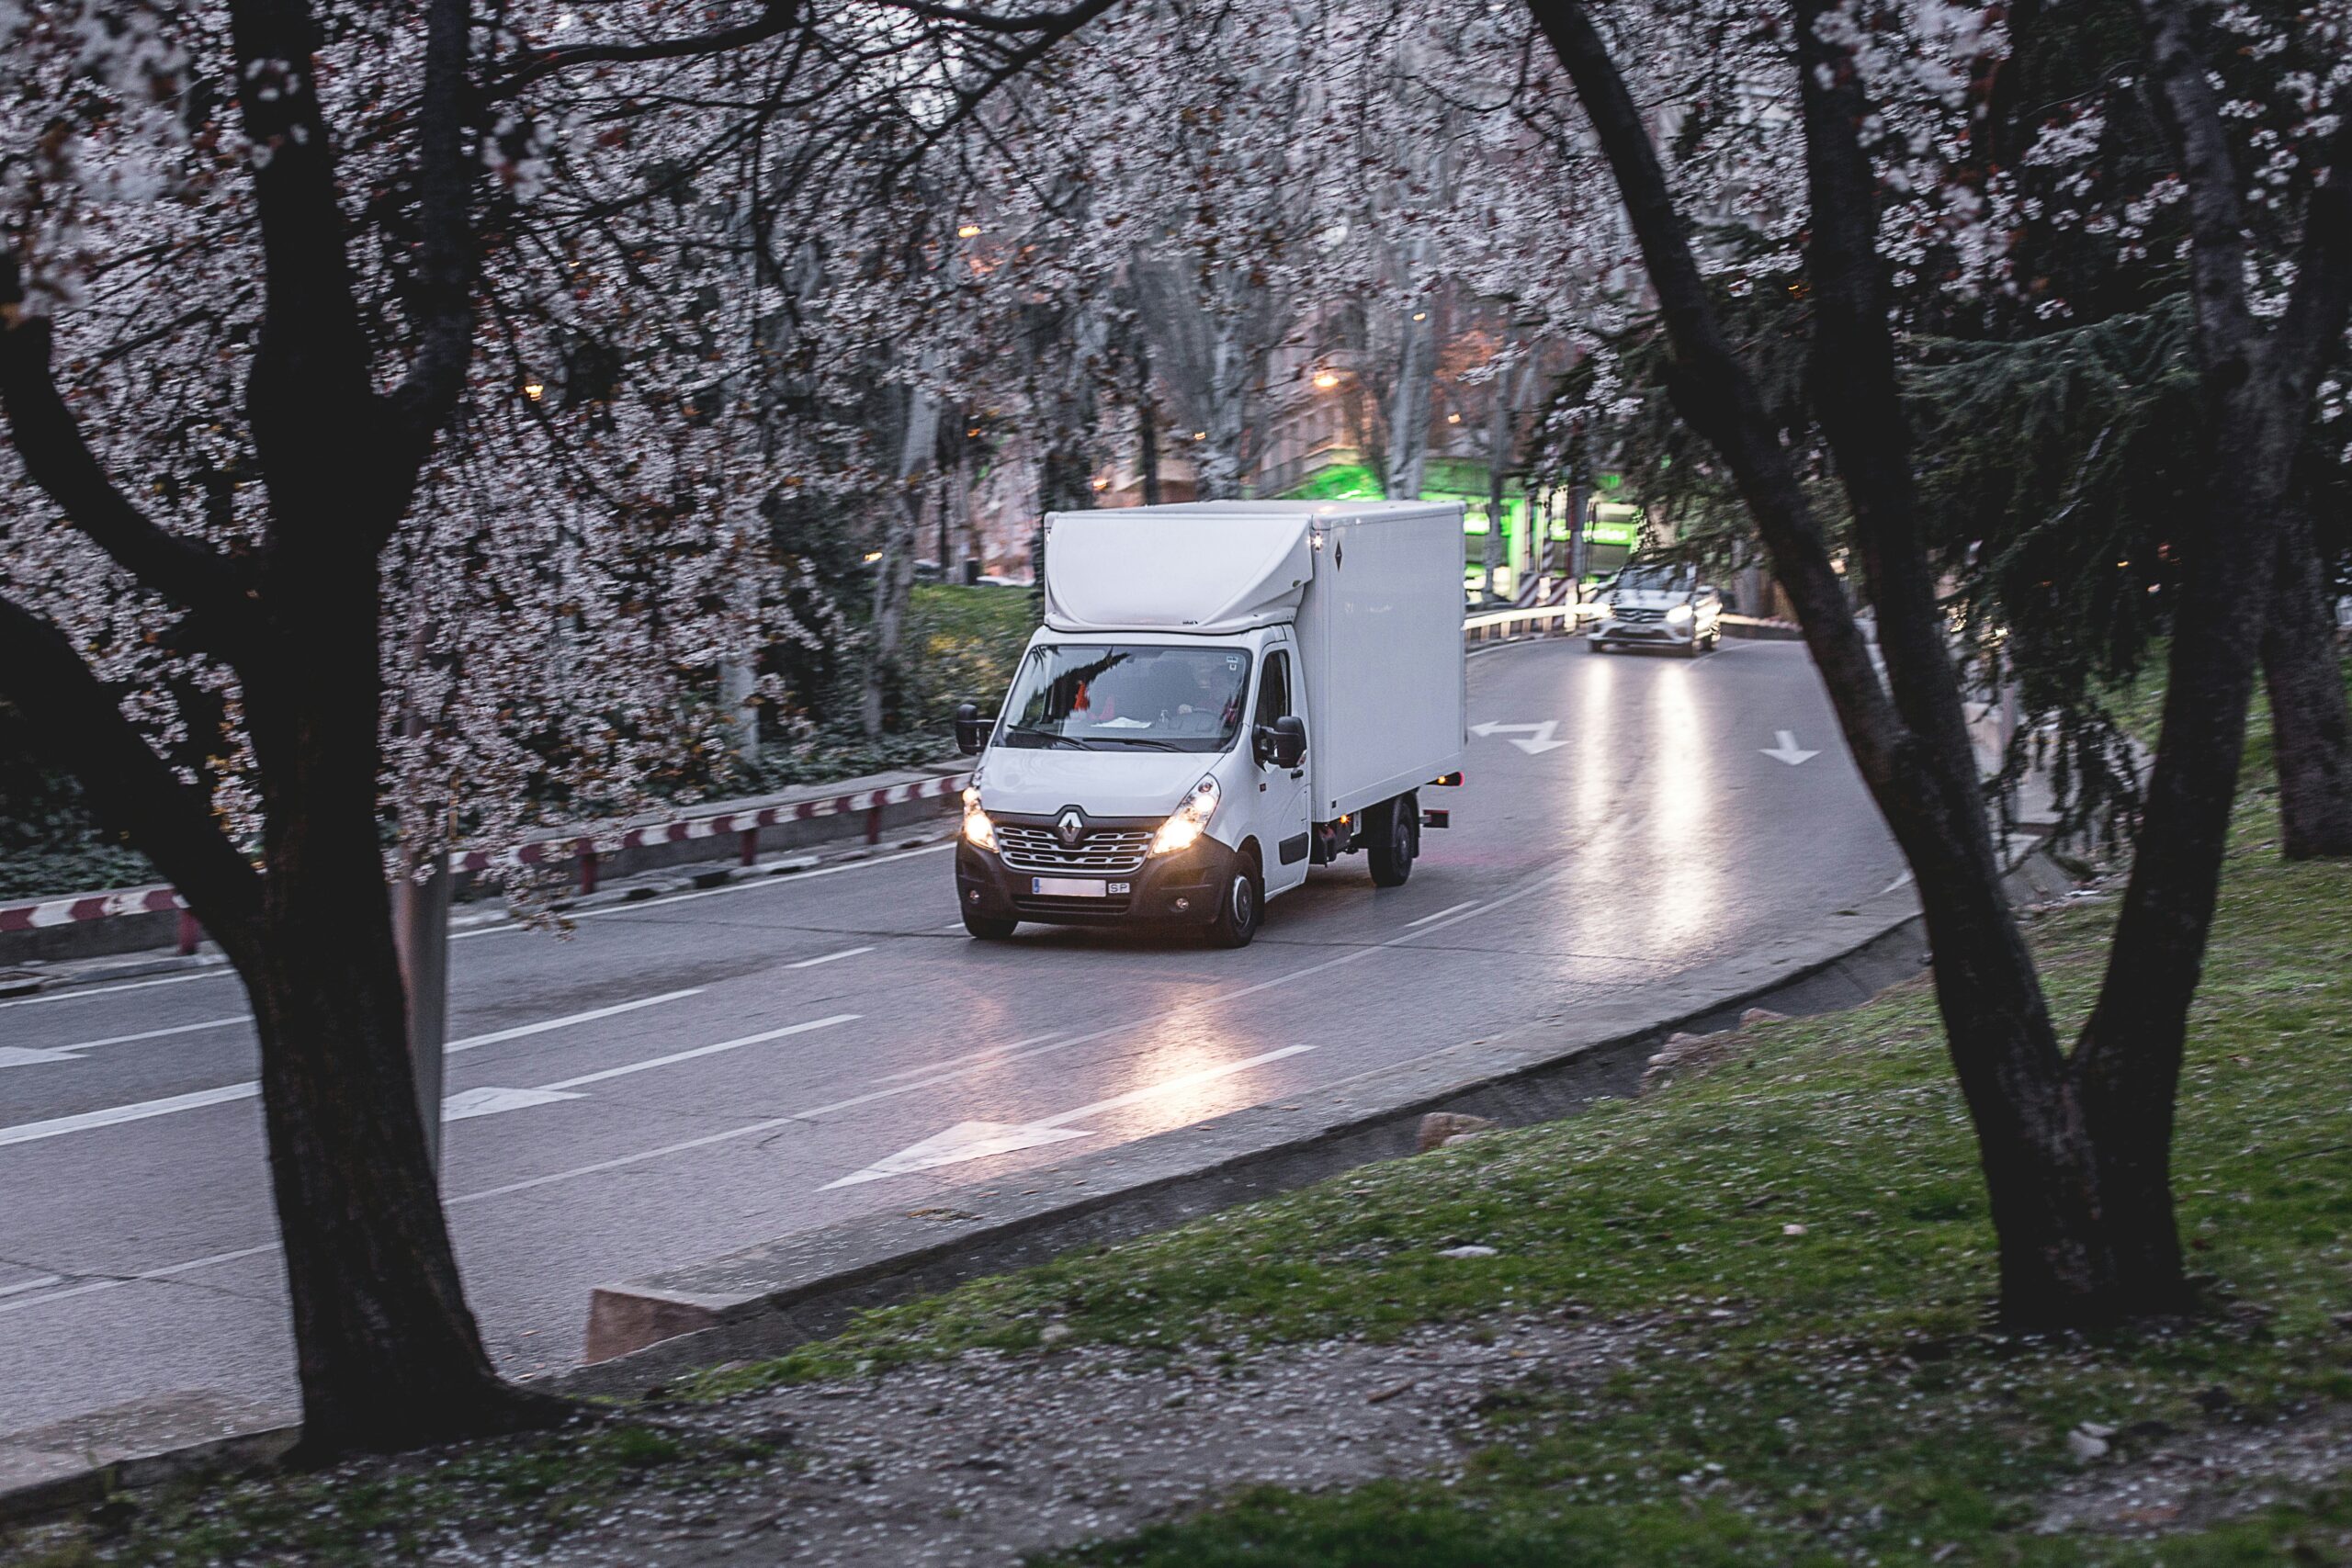 Camionnette roulant sur une route avec des arbres fleuris